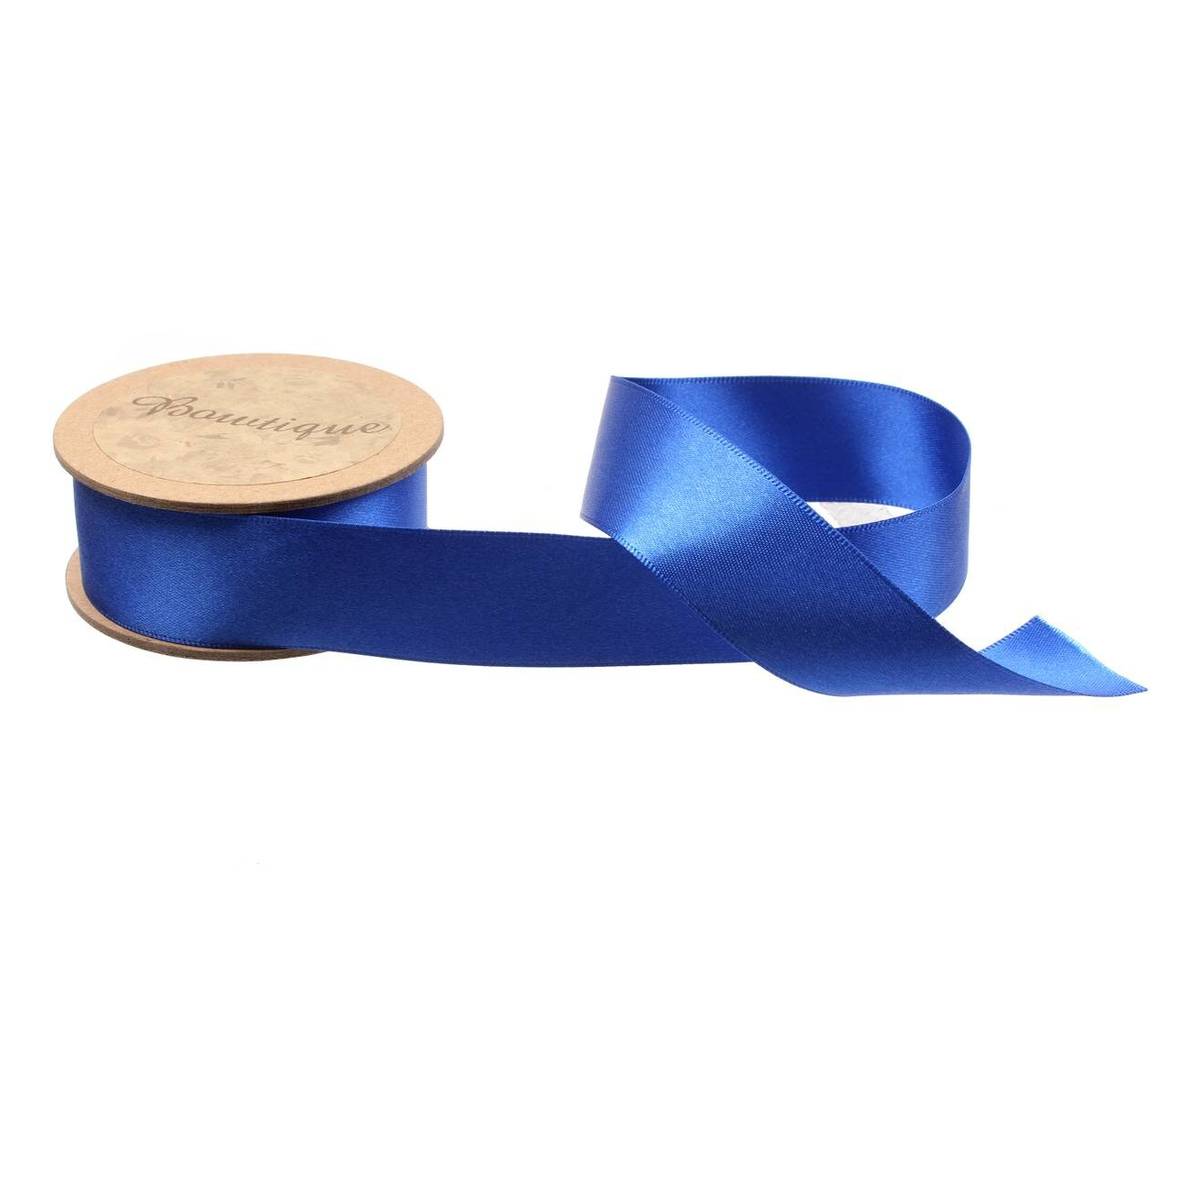 Double Faced Satin Ribbon Royal Blue 1/4 | Harts Fabric